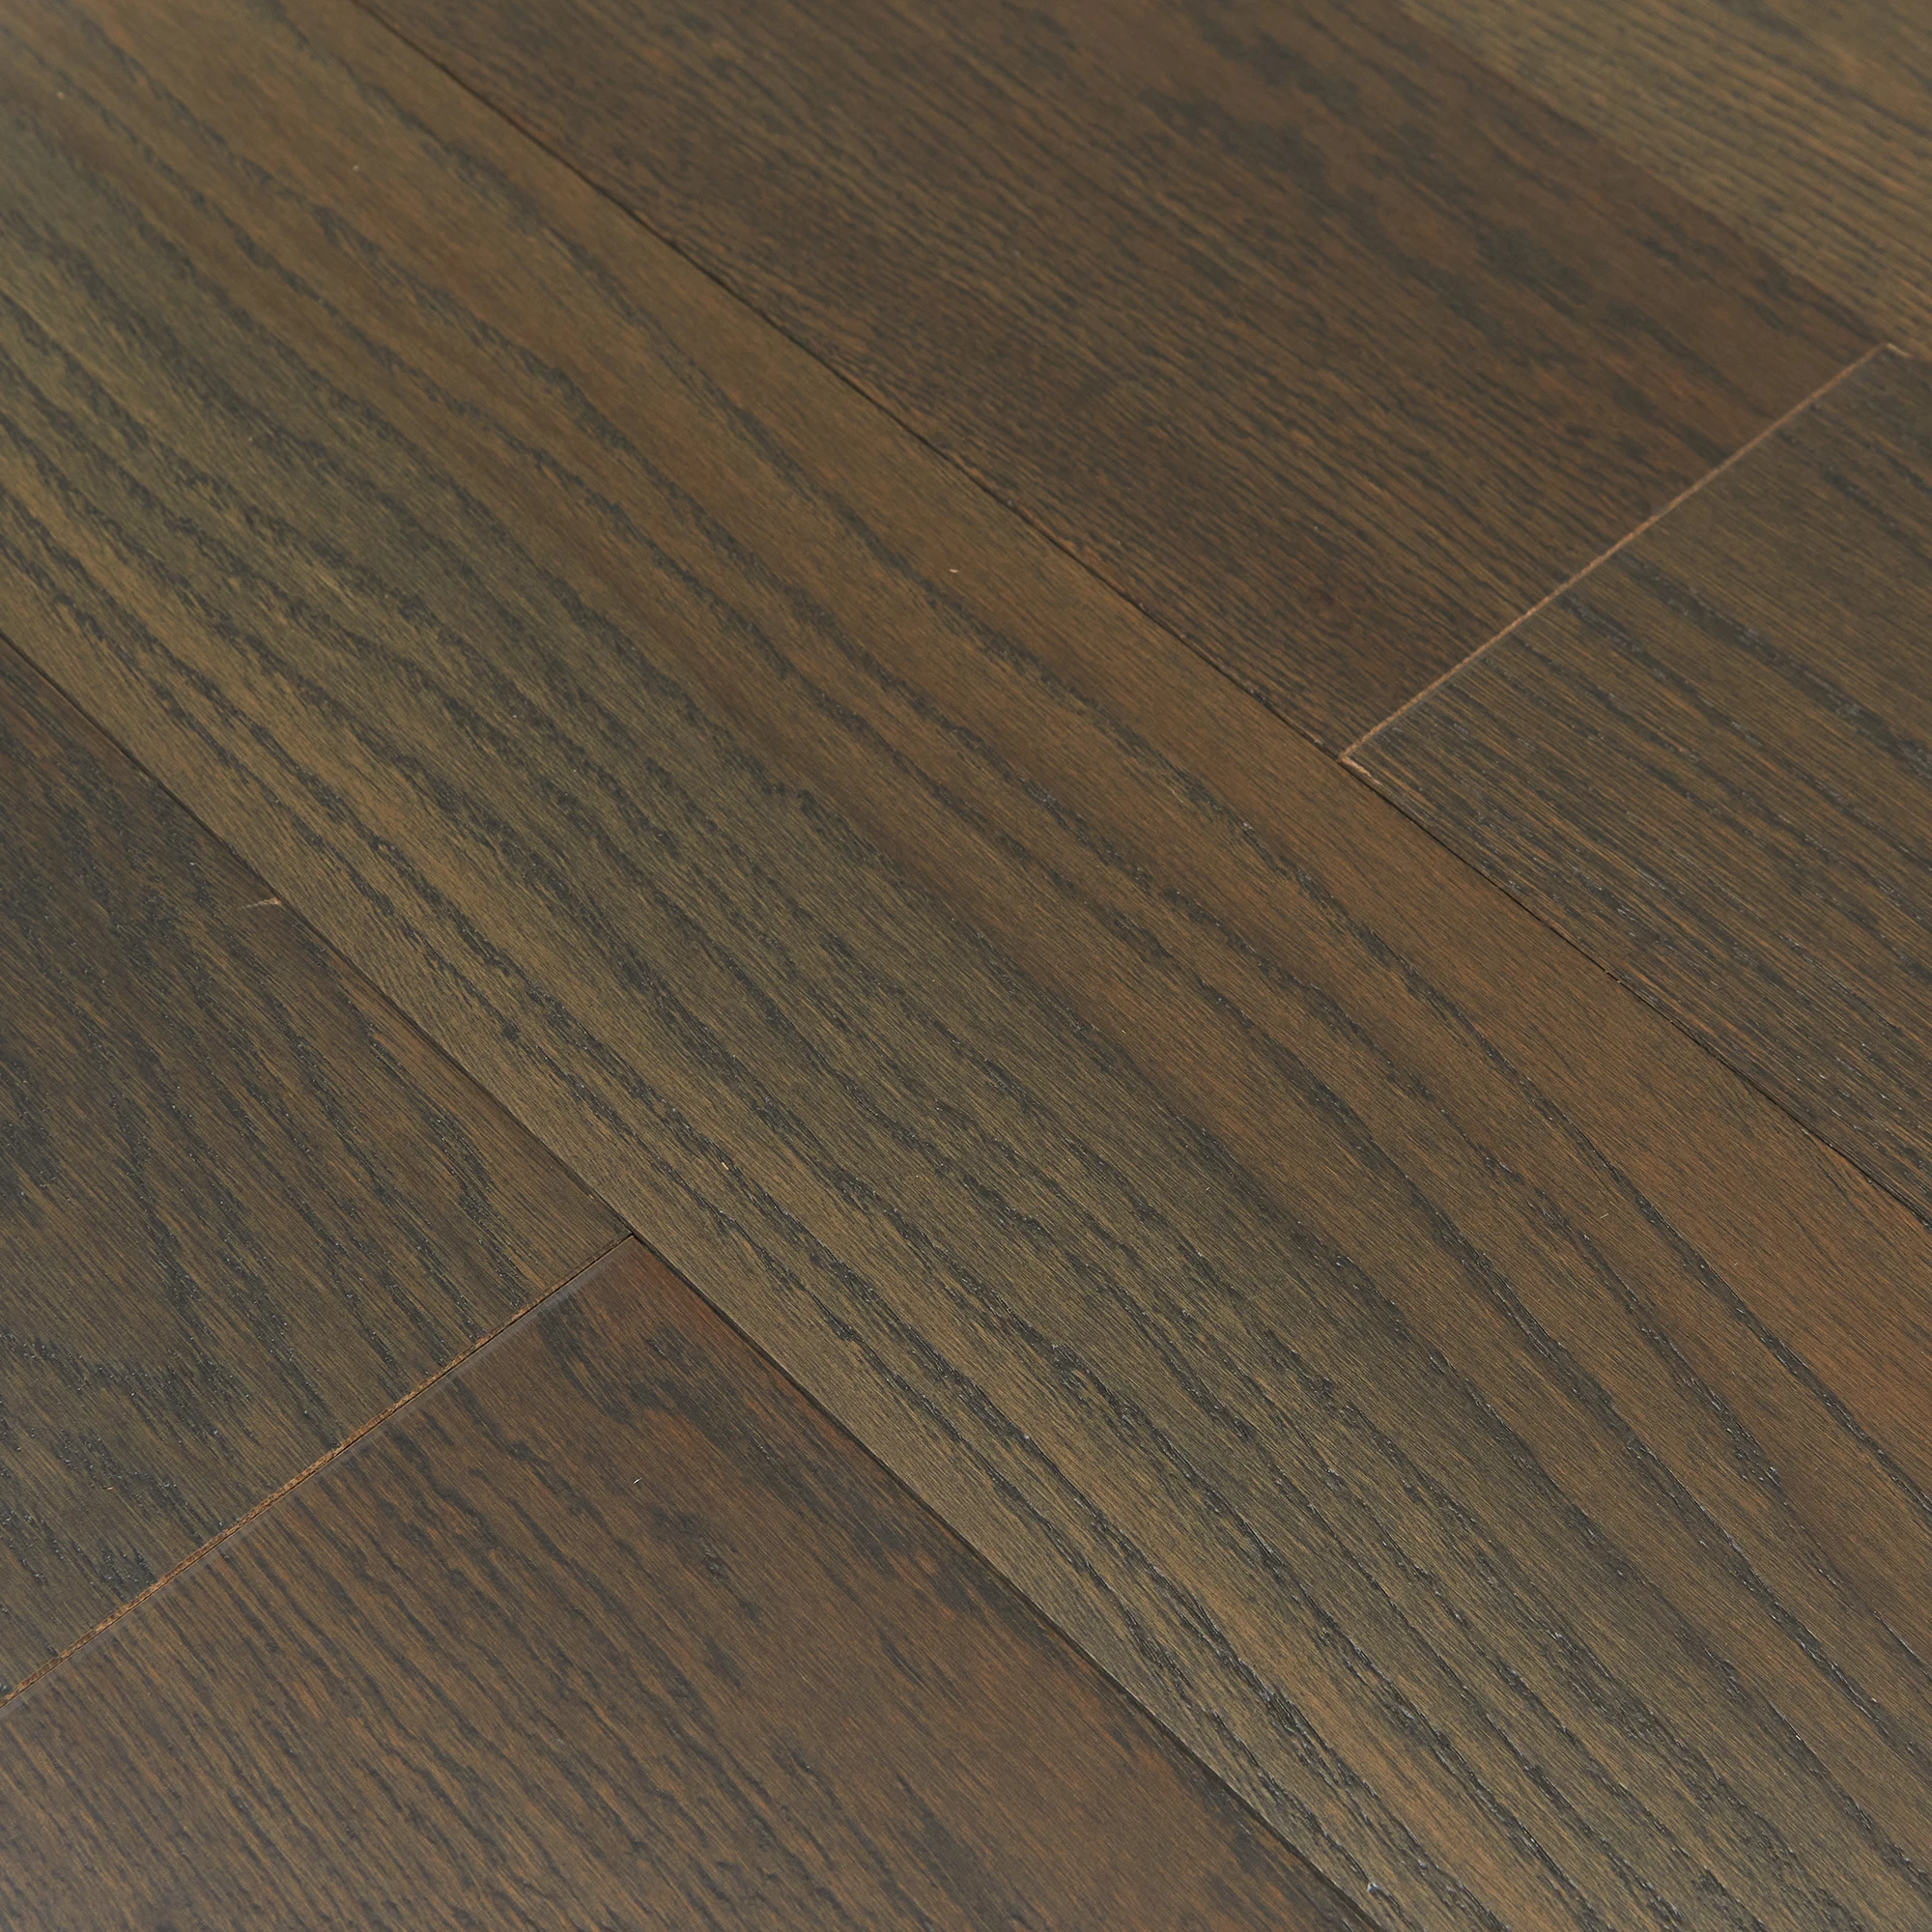 2022 Kangton Dark Brown Hardwood Timber Solid Flooring